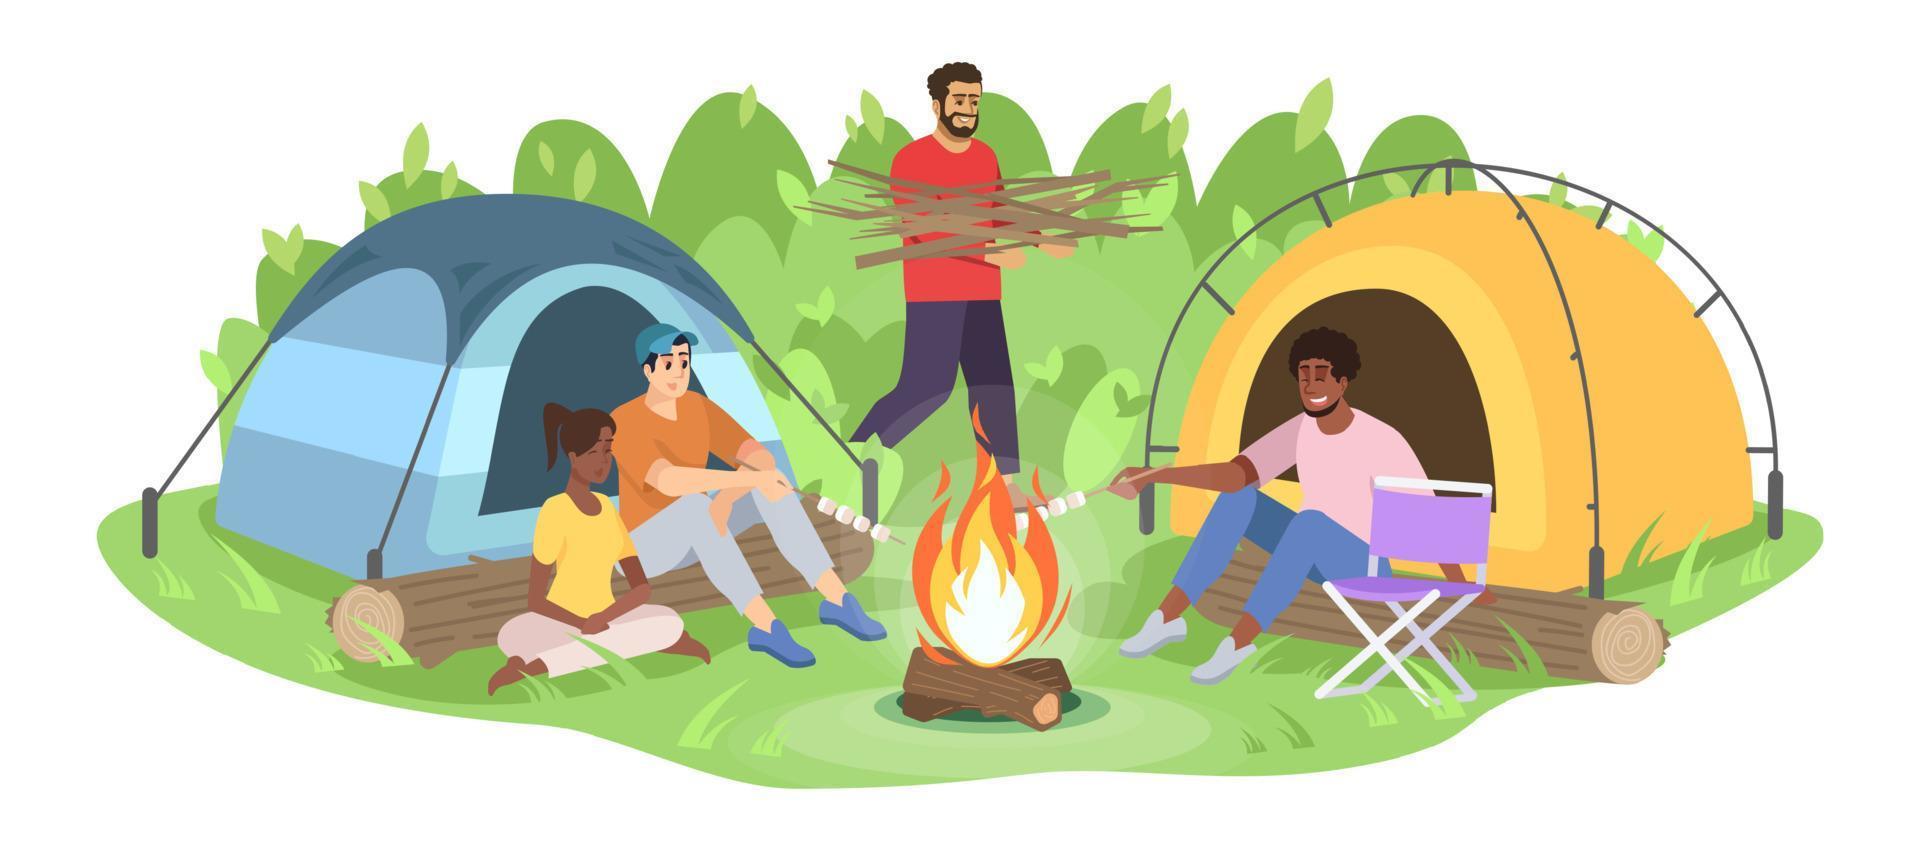 avontuurlijke camping reis platte vectorillustratie. gelukkige jonge kampeerders groep stripfiguren. vrienden zitten rond het kampvuur, man draagt brandhout. bos recreatie geïsoleerd op witte achtergrond vector